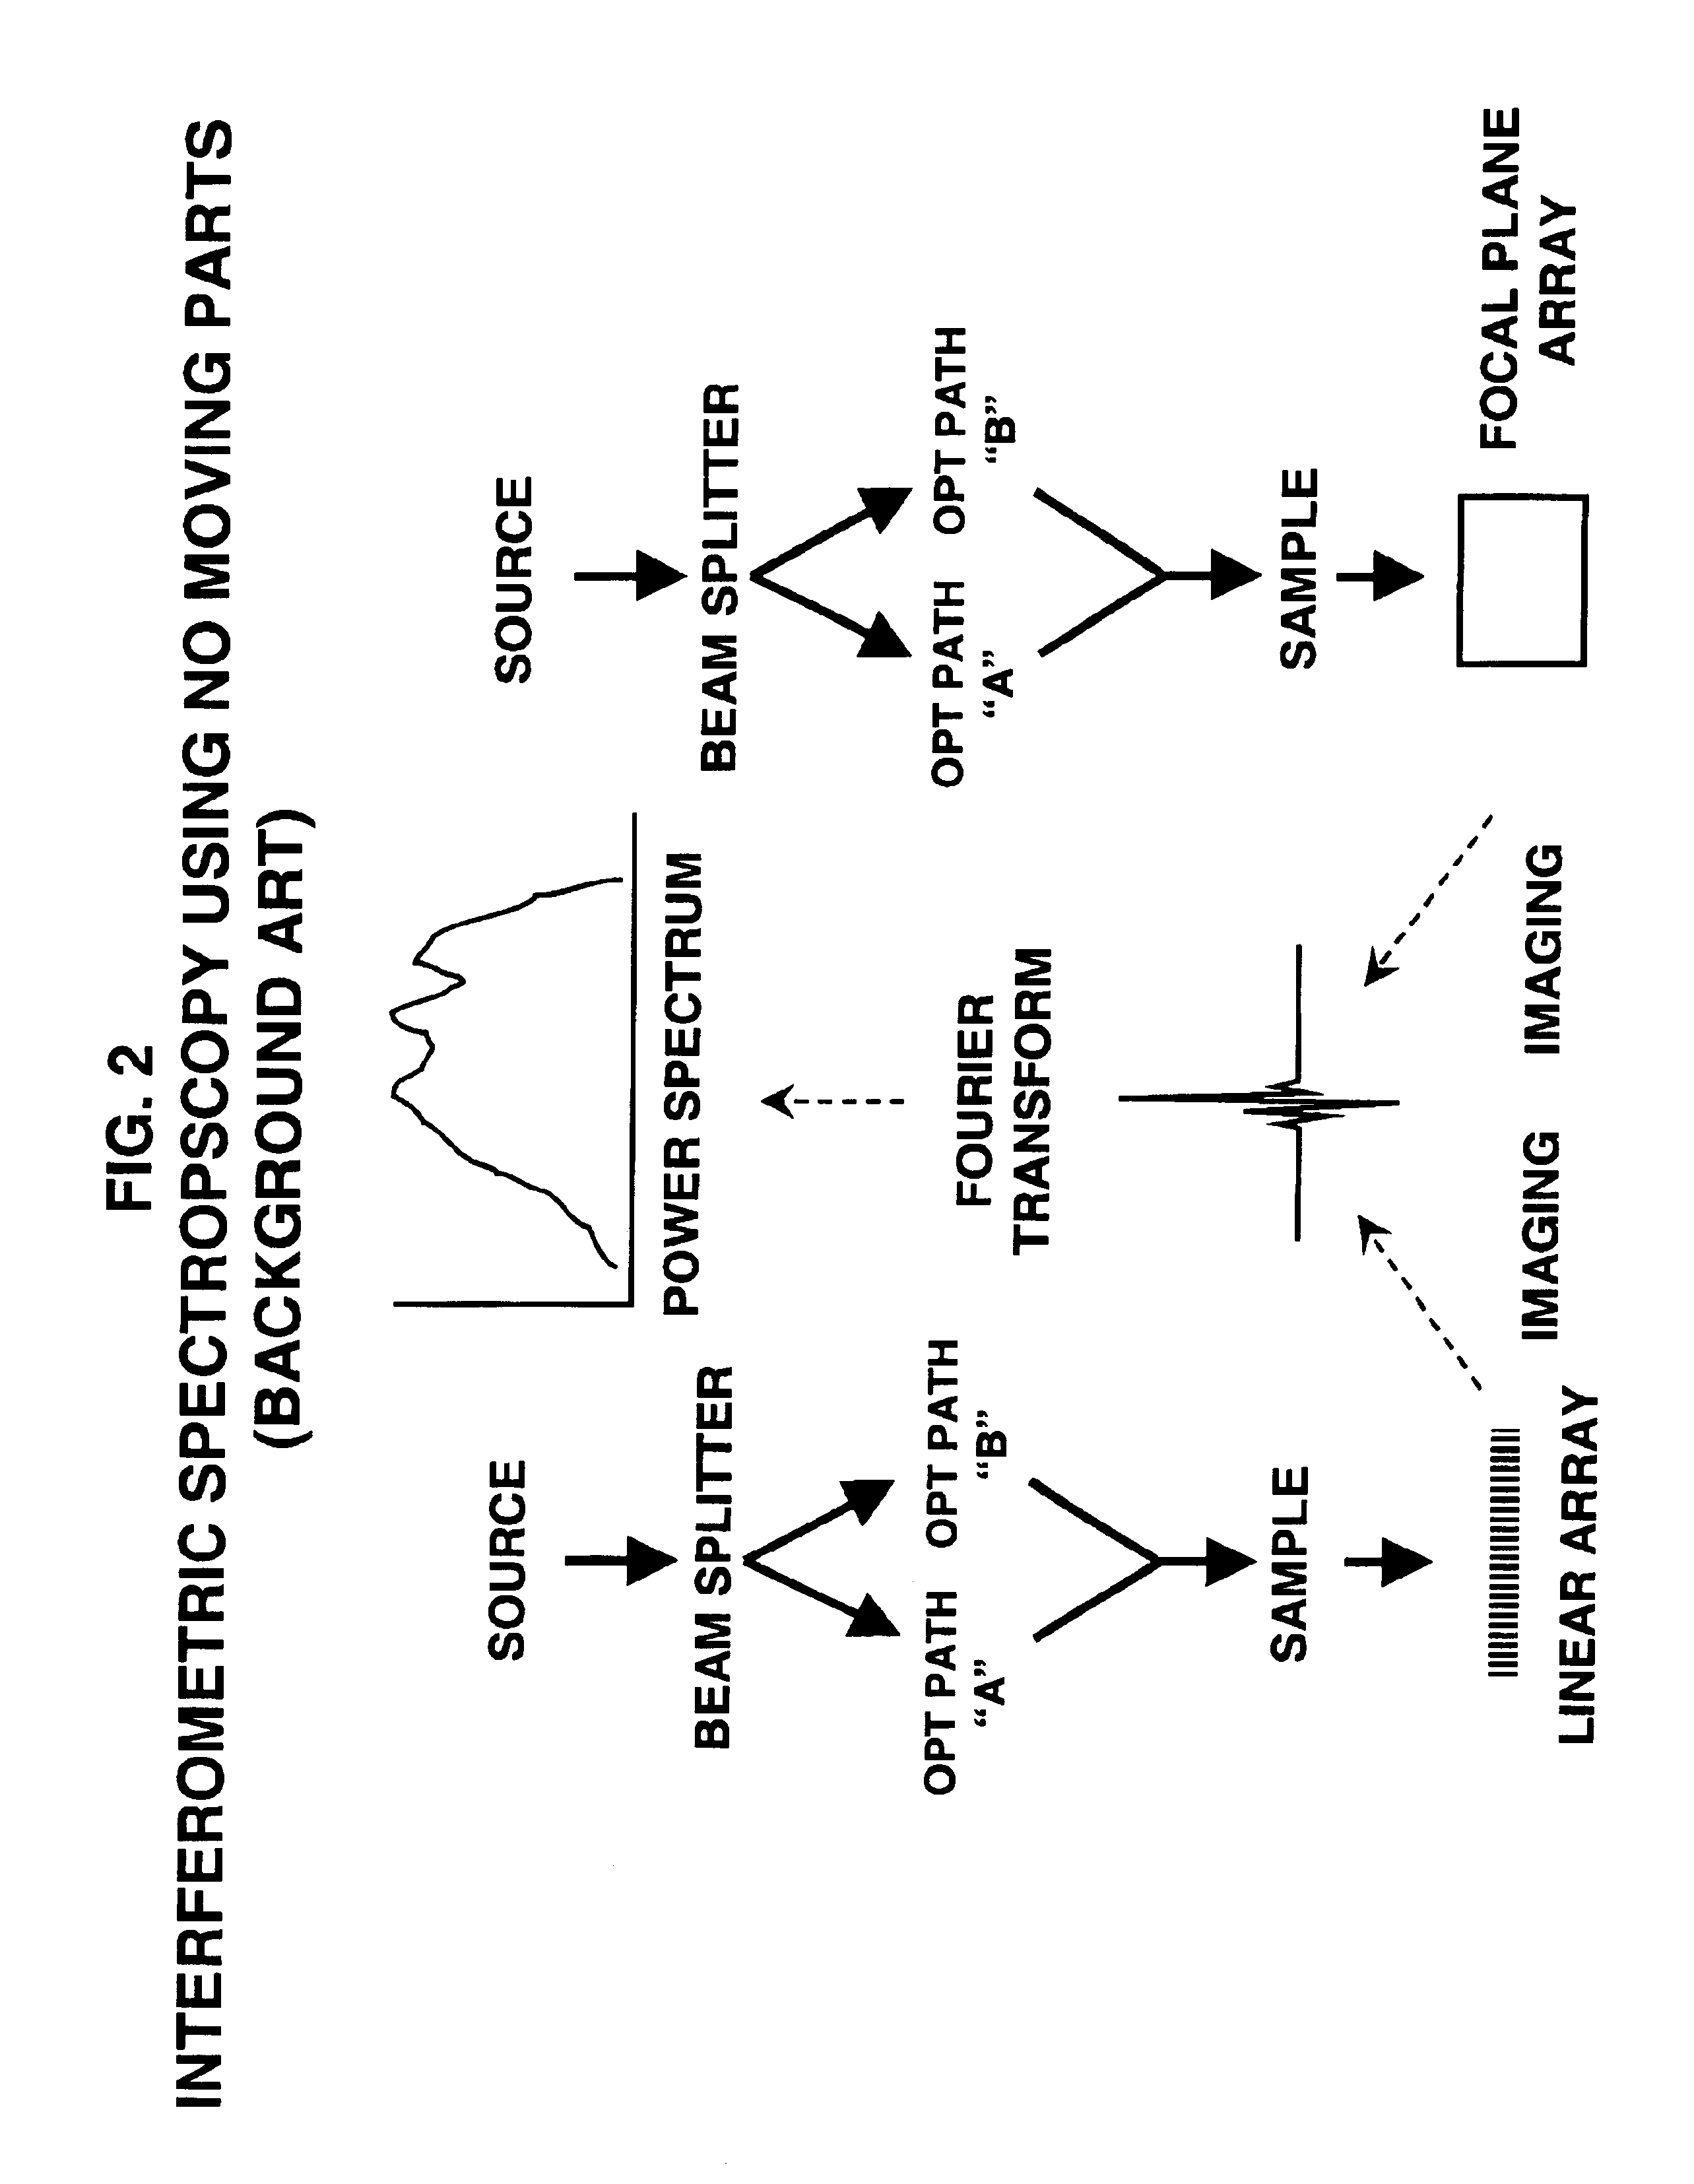 Simultaneous multi-beam planar array IR (pair) spectroscopy